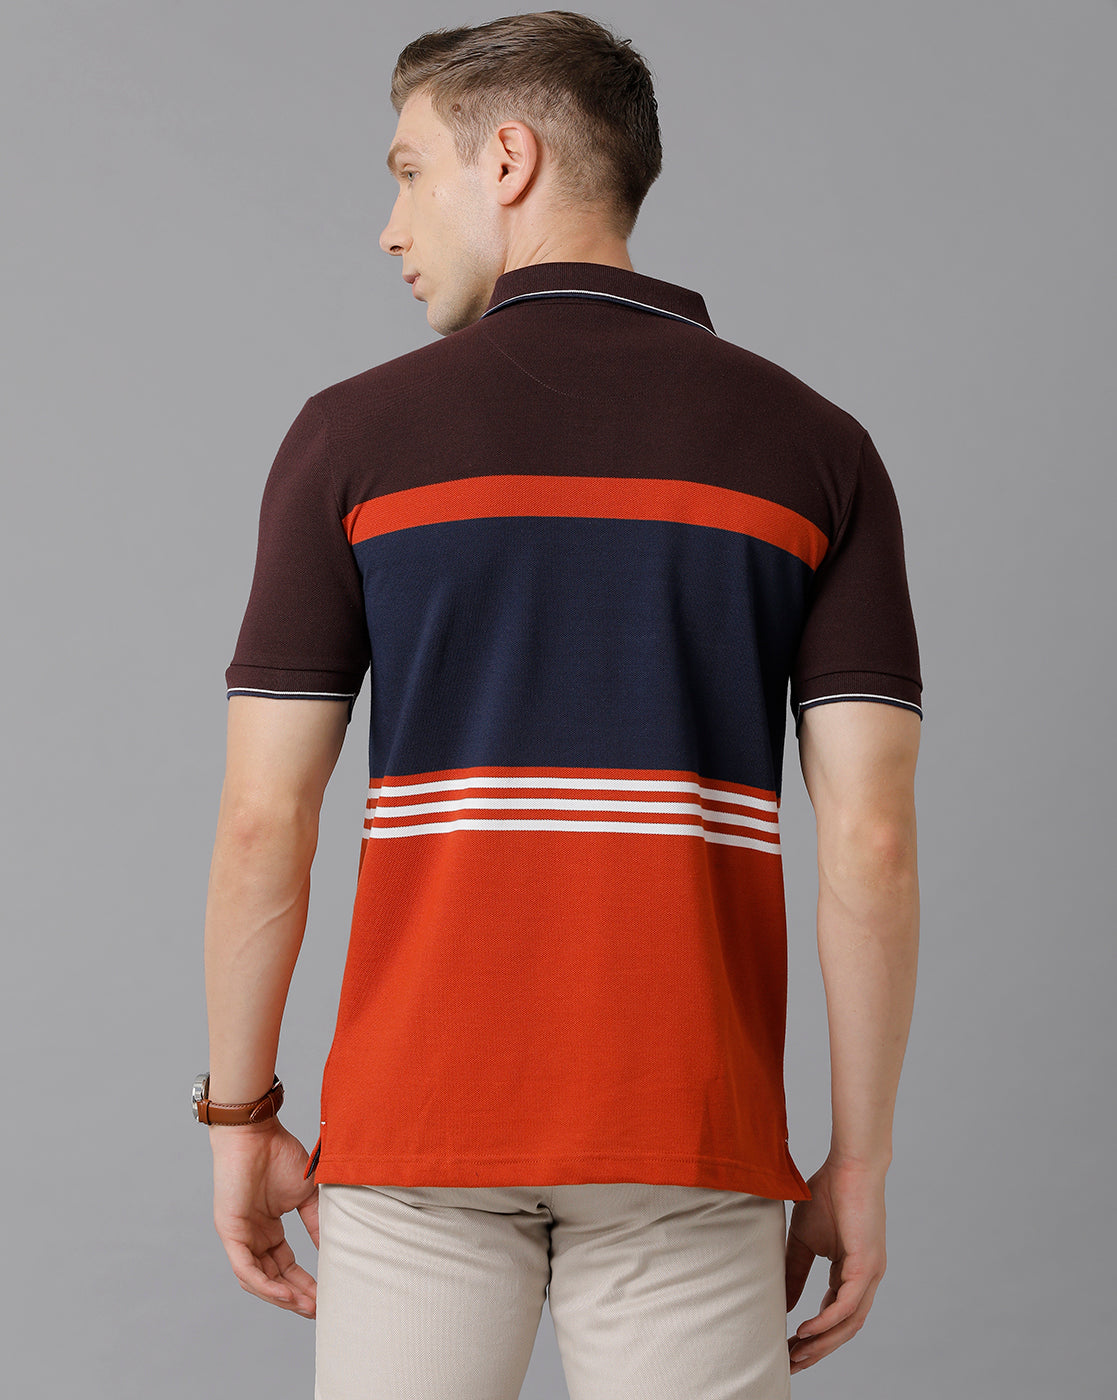 Classic Polo Men's Cotton Blend Striped Slim Fit Multicolor T-Shirt | Vta - 213 B